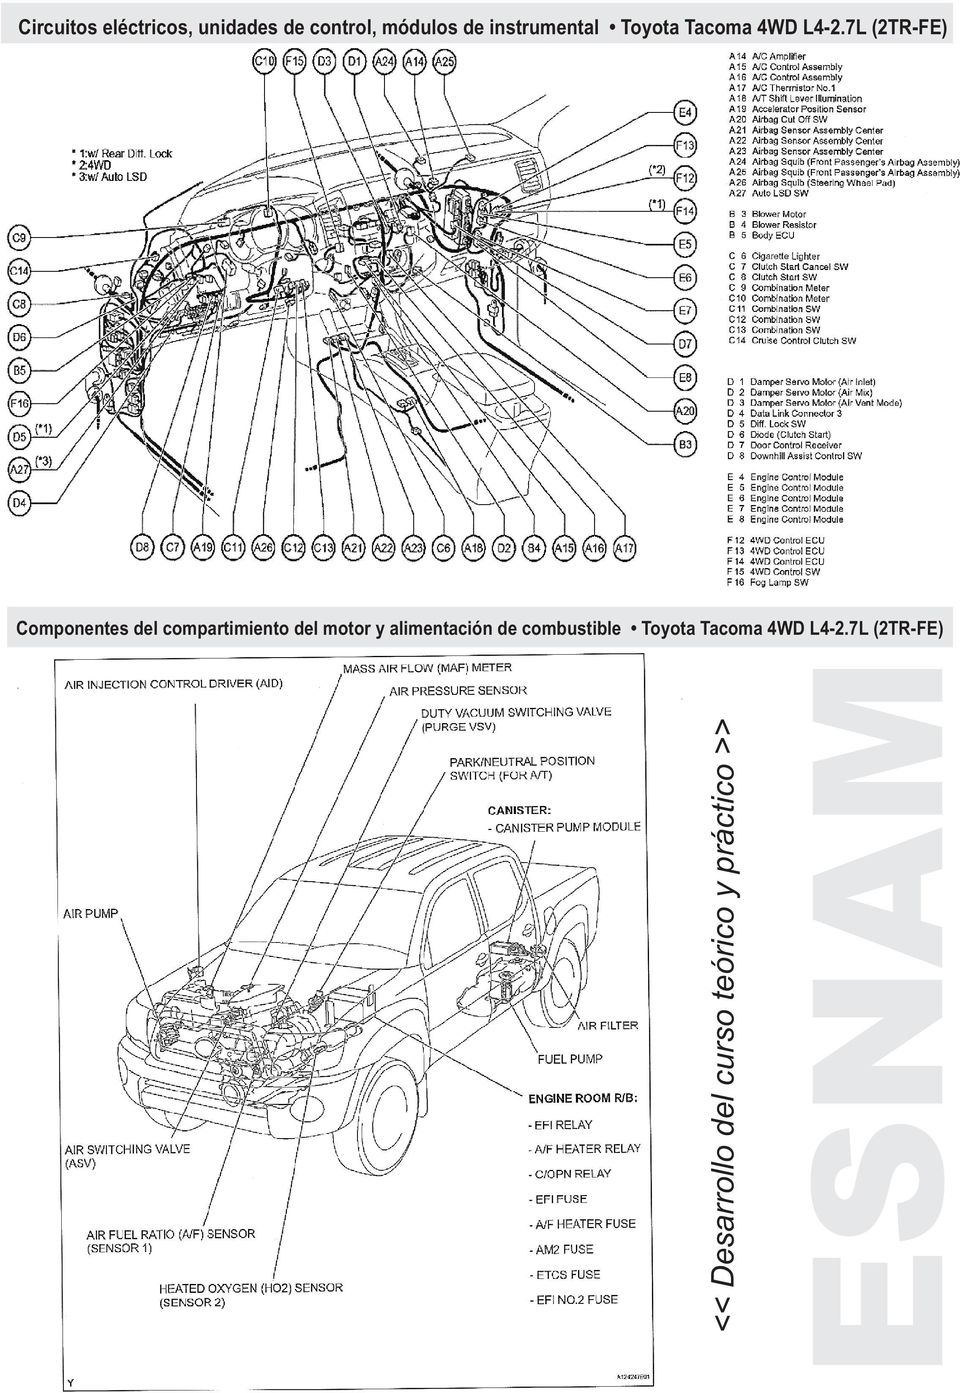 7L (2TR-FE) Componentes del compartimiento del motor y